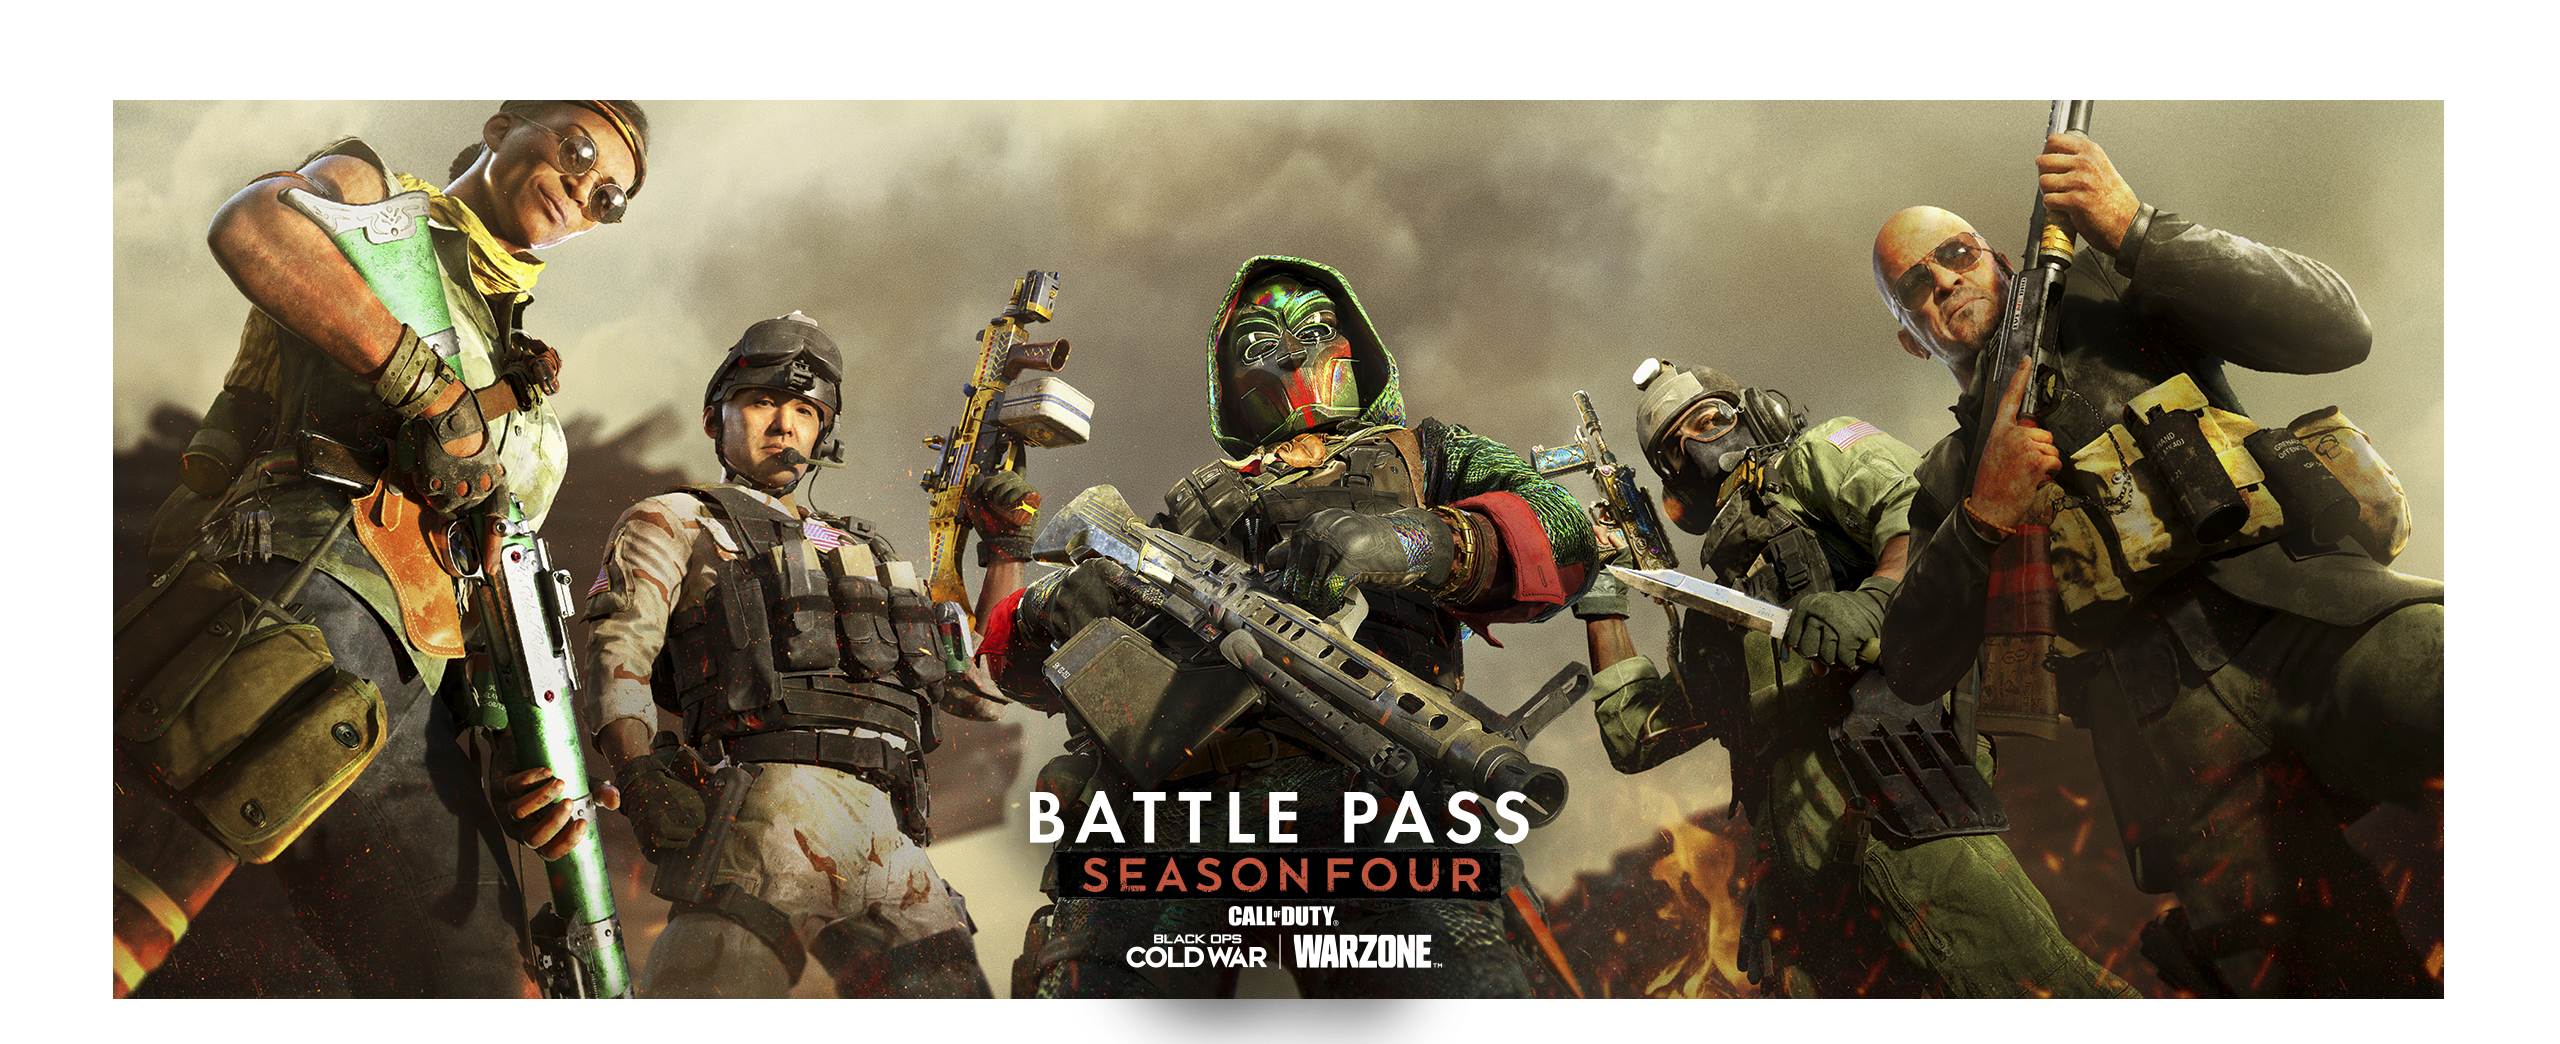 Call of Duty Black Ops Cold War Season 4 Battle Pass artwork